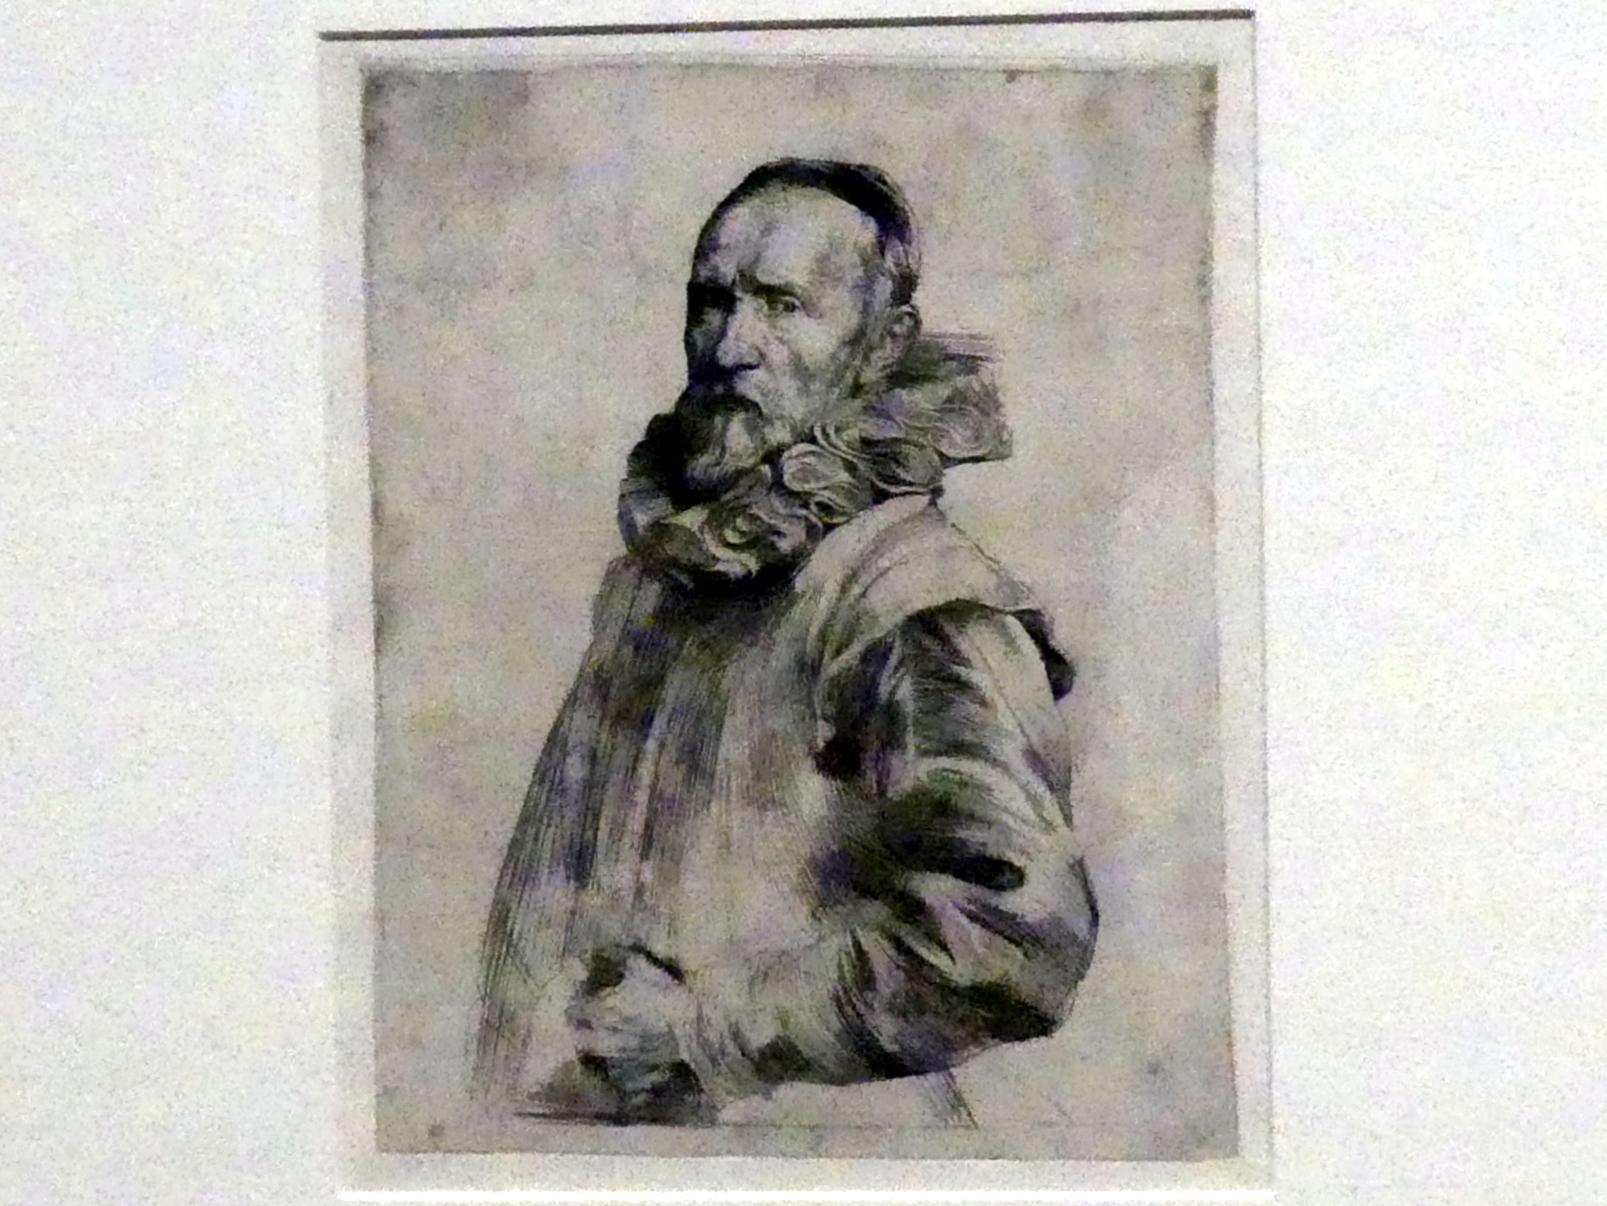 Anthonis (Anton) van Dyck (1614–1641), Jan de Wael, 1. Zustand, München, Alte Pinakothek, Ausstellung "Van Dyck" vom 25.10.2019-02.02.2020, Die "Ikonographie" - 1, um 1627–1629